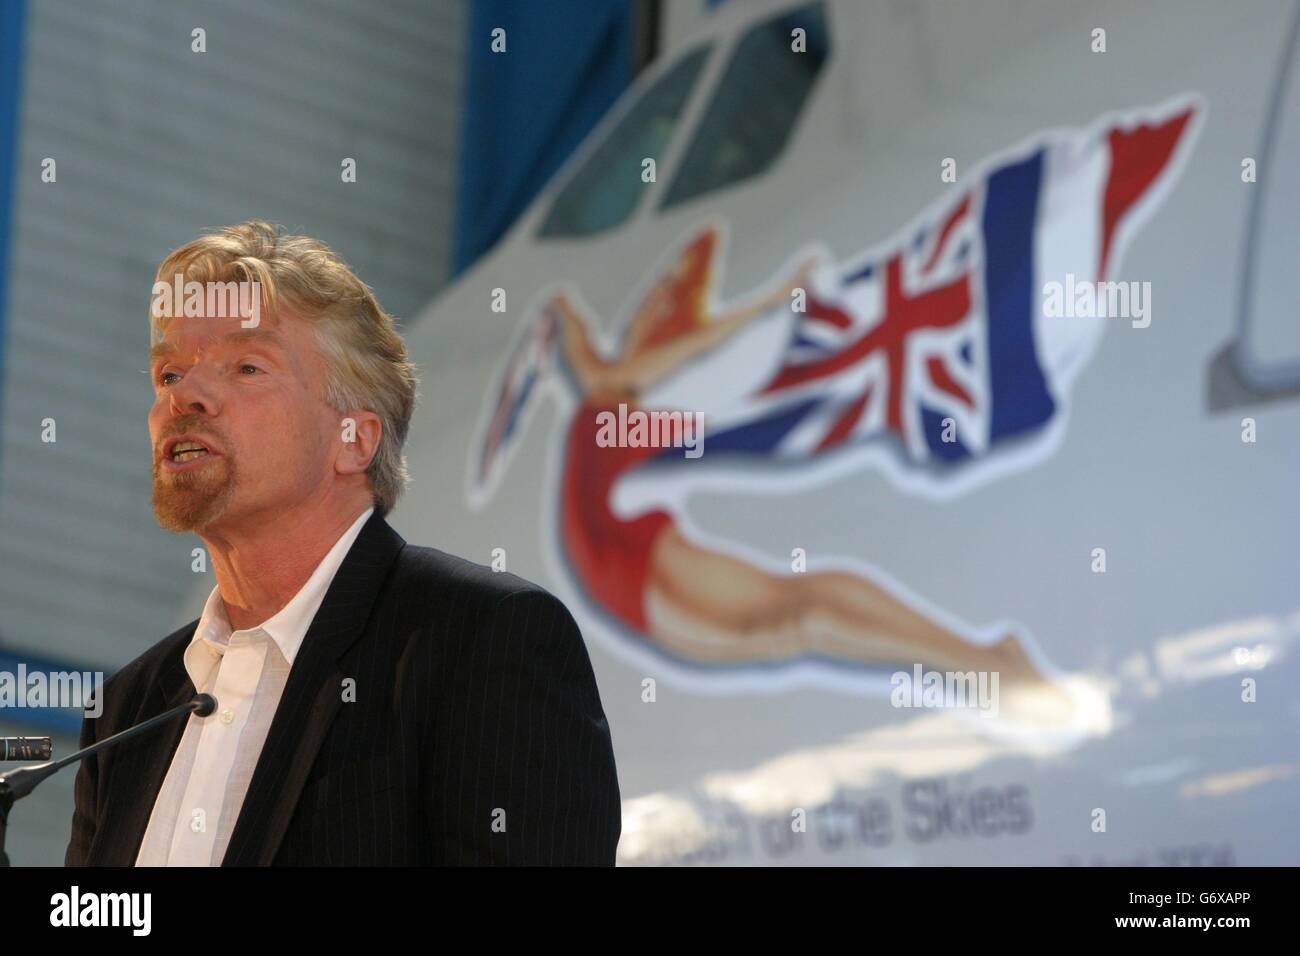 Sir Richard Branson presso lo stabilimento Airbus di Tolosa. La regina chiamò uno degli aerei di Sir Richard Branson per la prima volta questa sera, dichiarandola "Regina dei cieli". Ad un hangar a Tolosa, è stata guardata dall'imprenditore mentre ha svelato la sua ultima Virgin Atlantic Airbus A340-600, l'ultimo giorno della sua visita di stato in Francia. Foto Stock